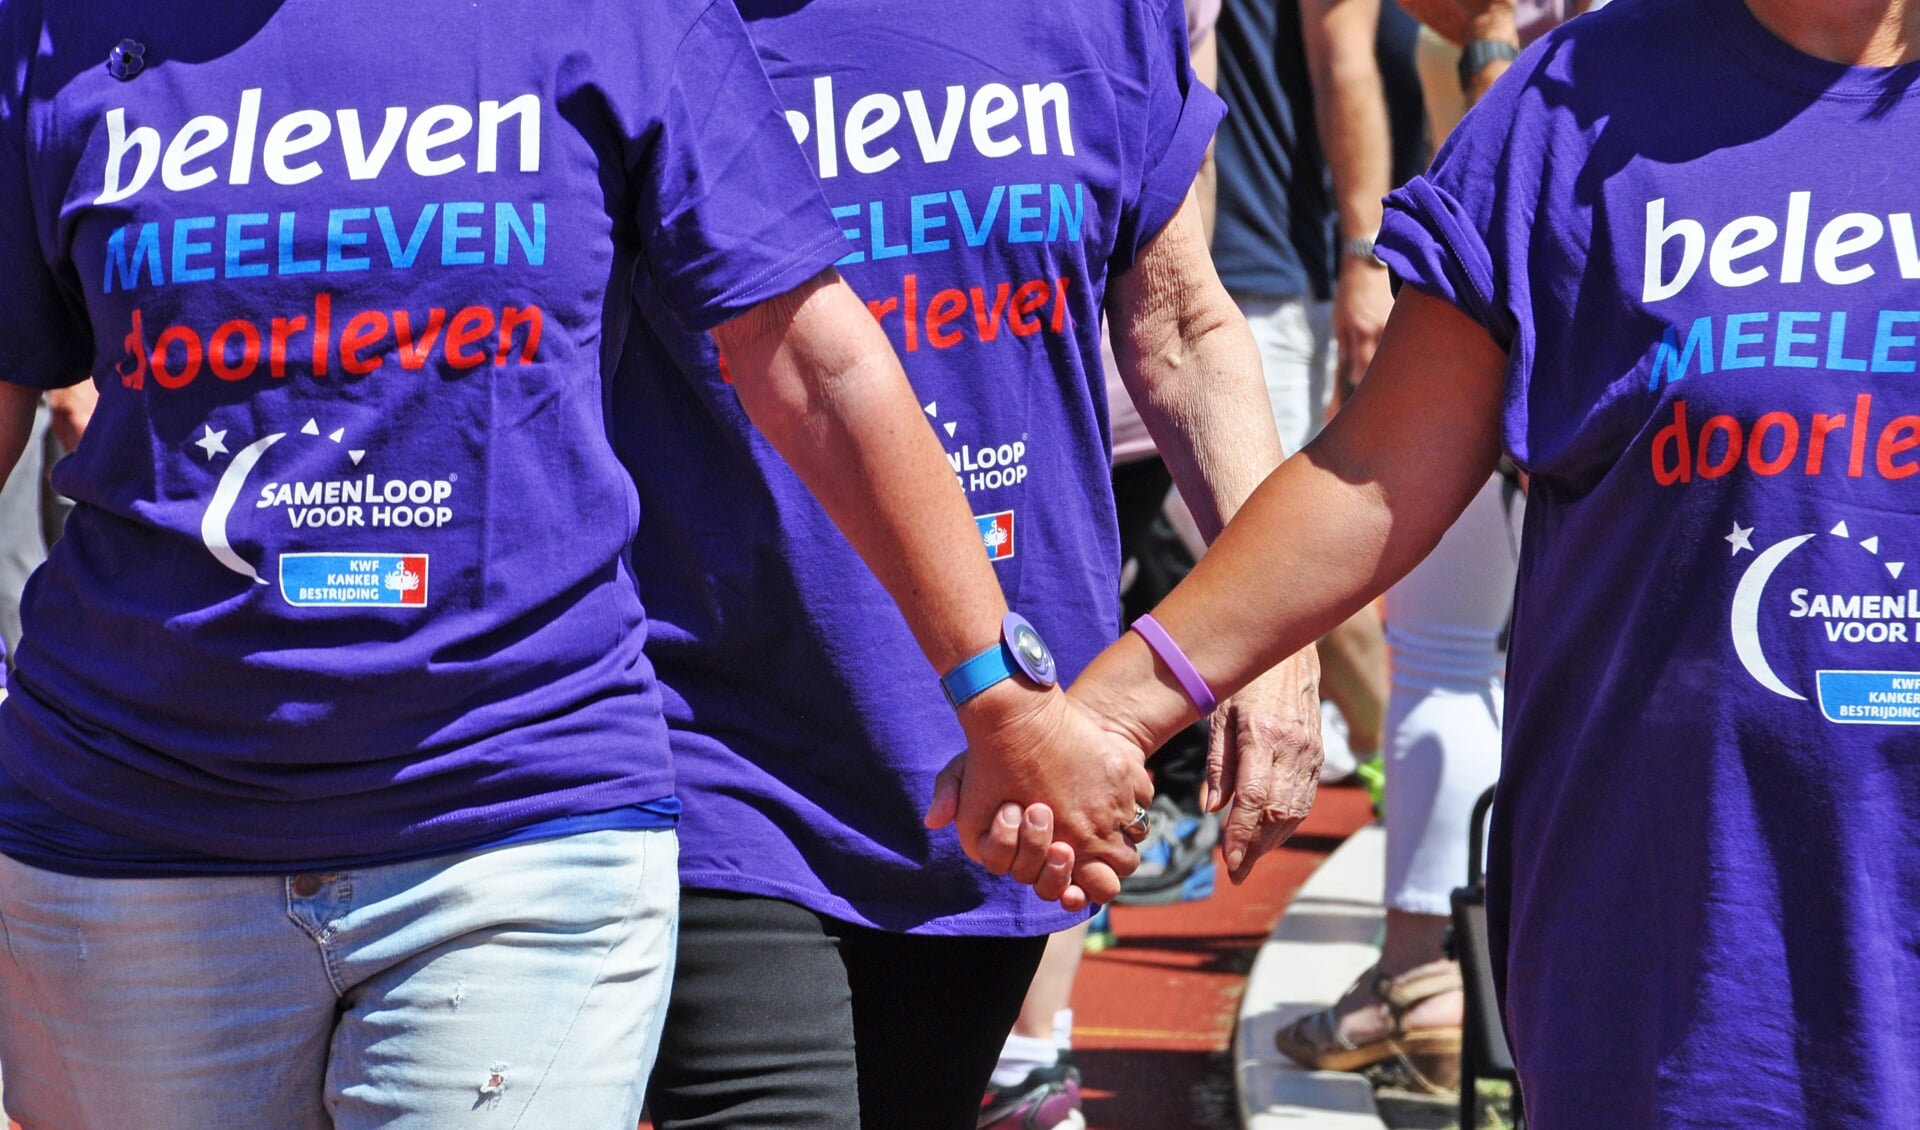 Gedurende een 24-uurs wandelestafette staan de deelnemers samen met lotgenoten stil bij kanker én vieren zij het leven.